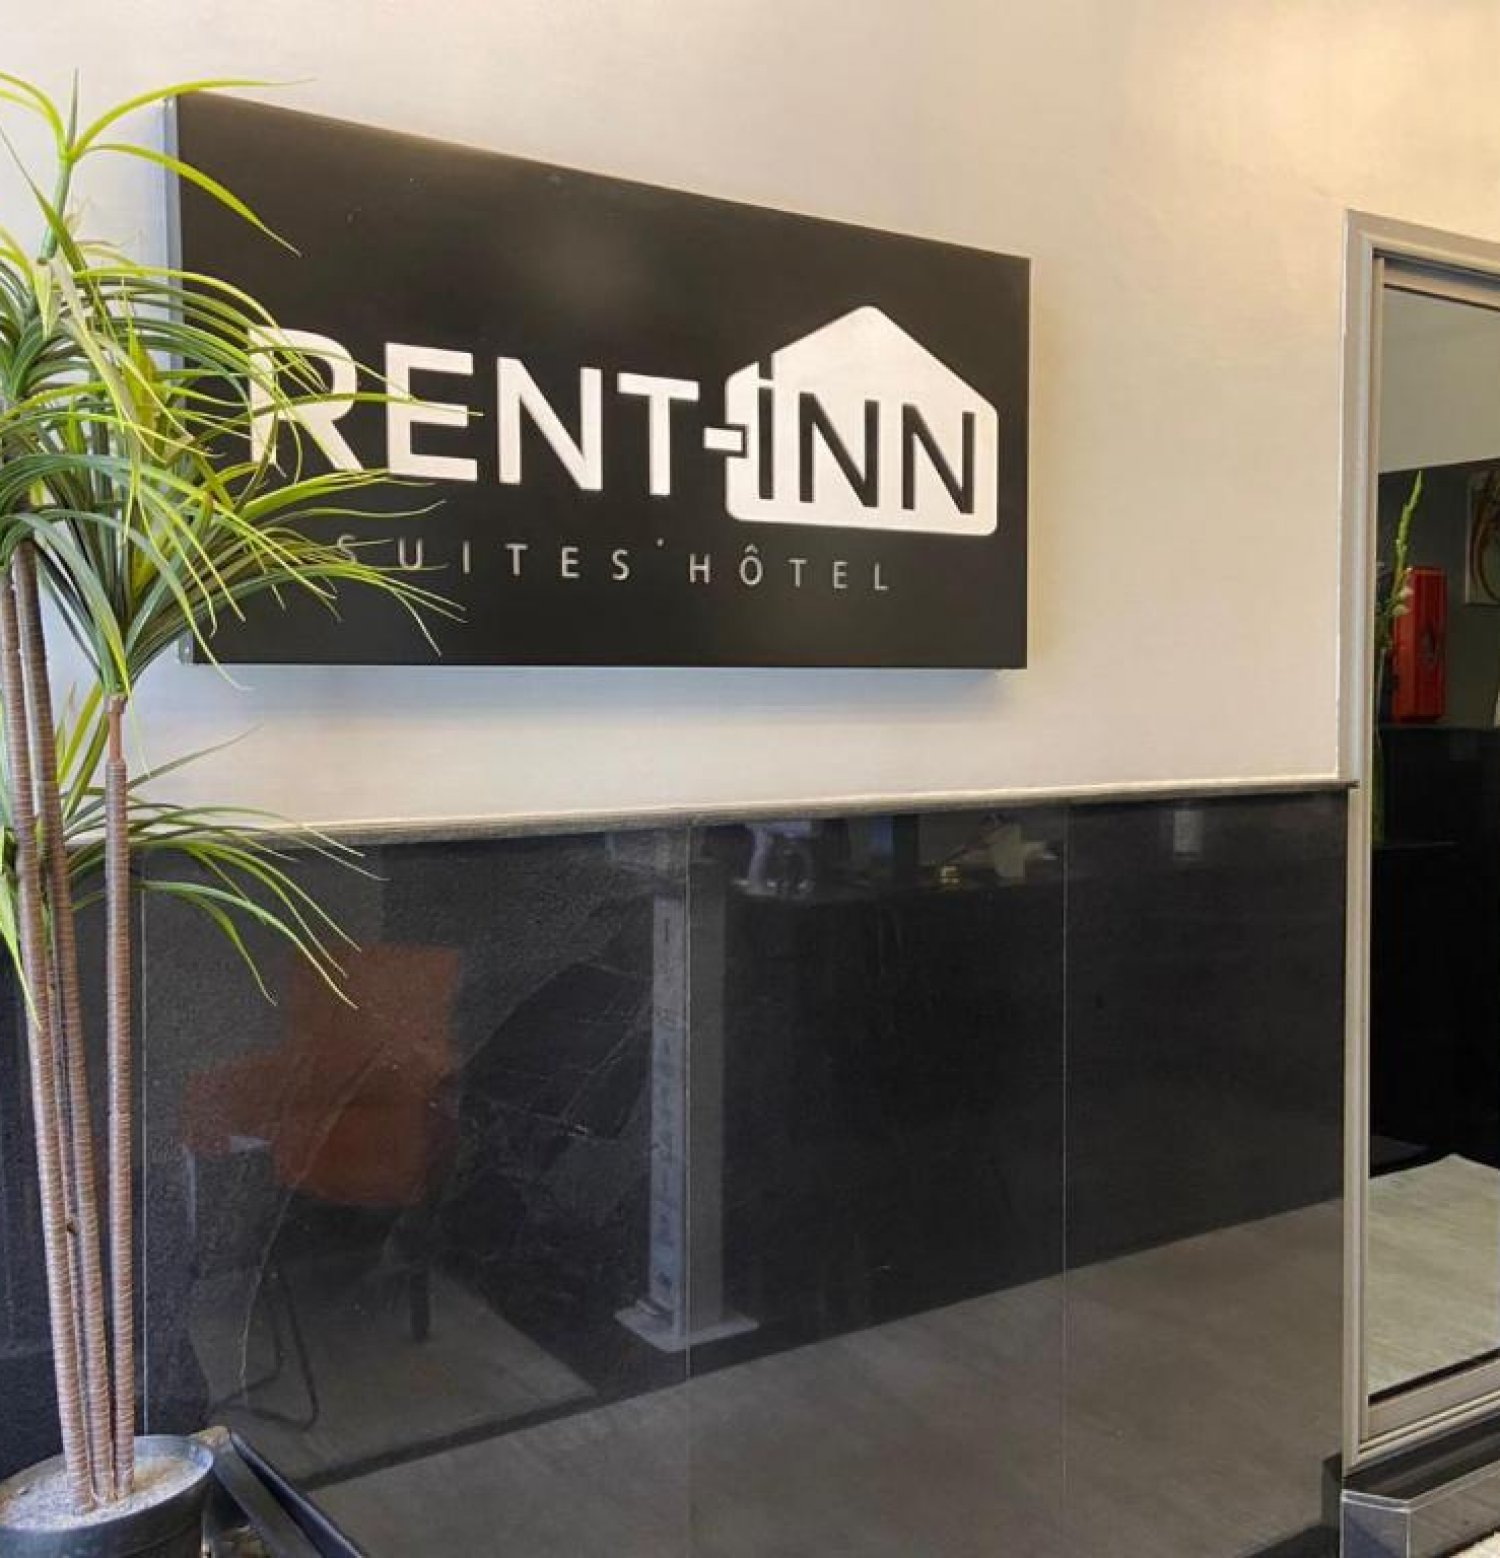 RENT-INN Suites Hotel 